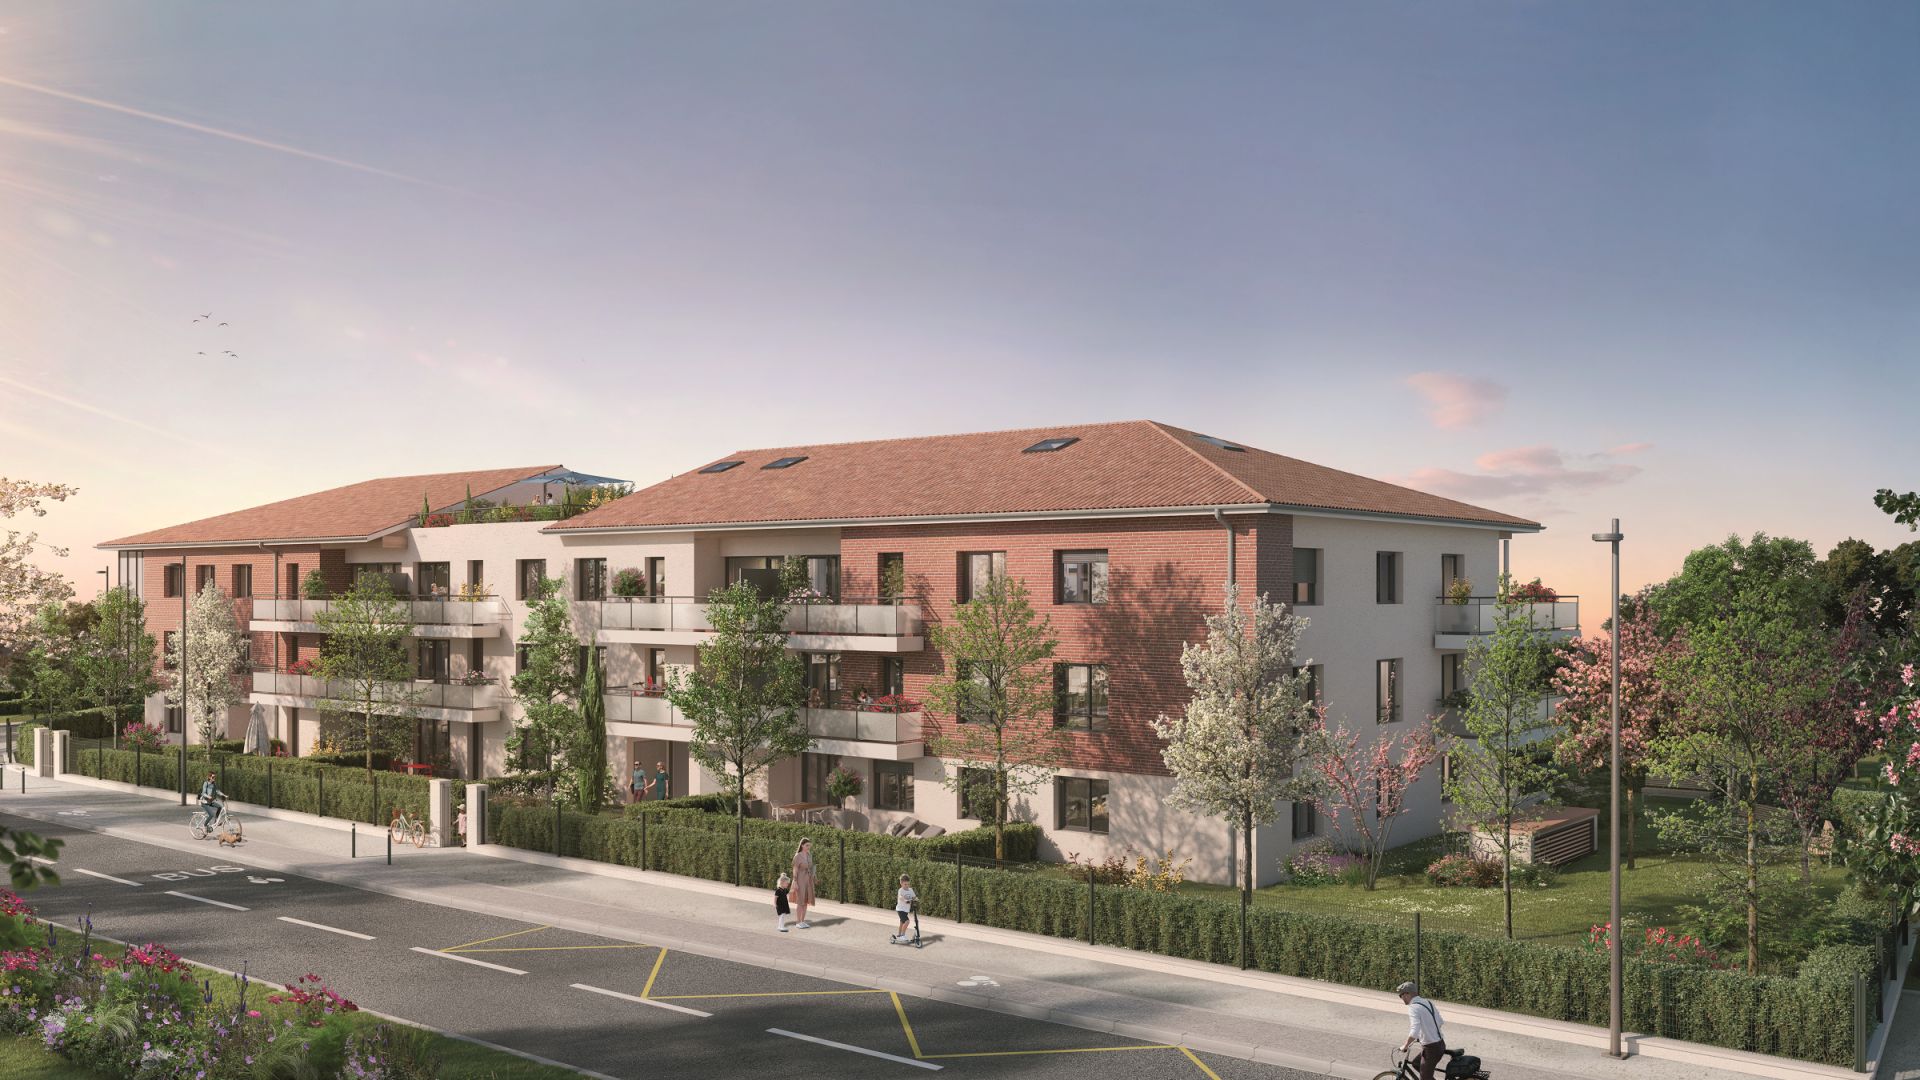 Greencity immobilier - achat appartements neufs du T1 au T5 - Résidence Le Luminance - 31650 Saint-Orens-de-Gameville - vue rue